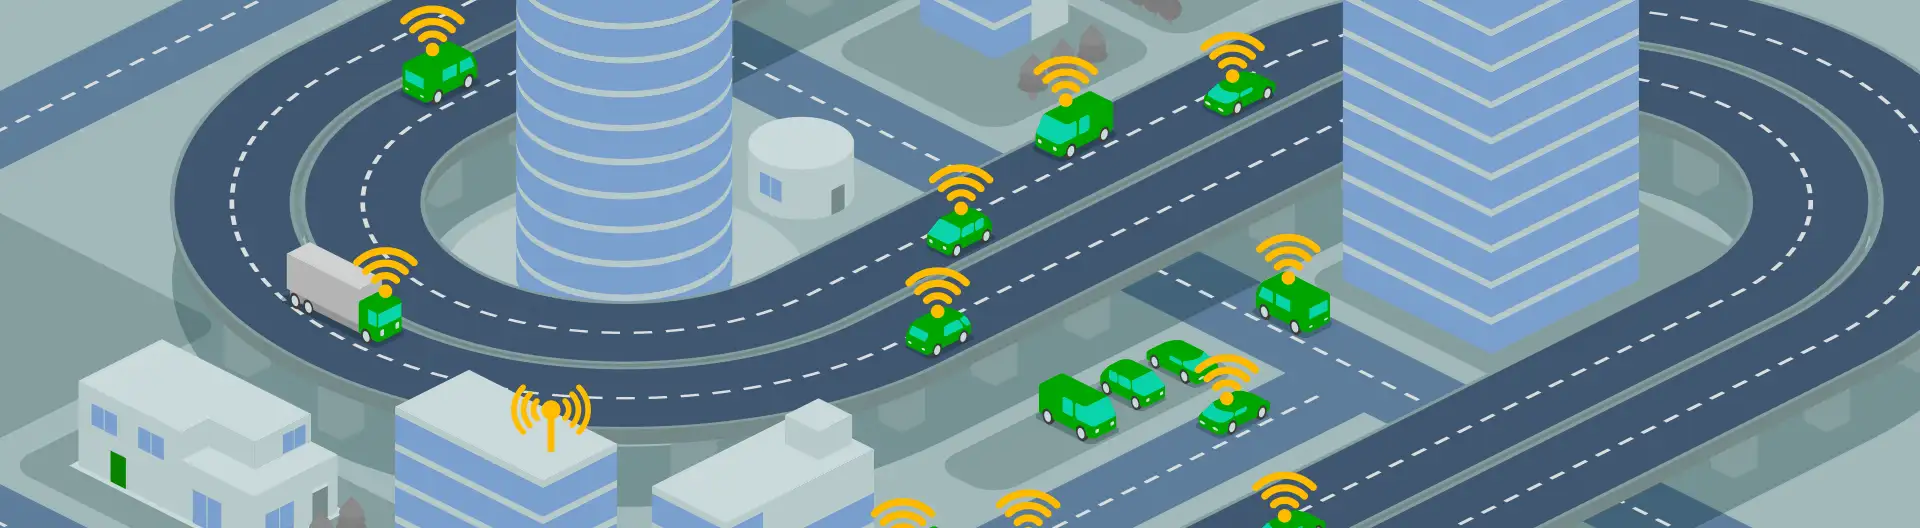 Anwendung von IoT und Computer Vision zur Entwicklung von zwei Smart-Parking-Lösungen - Banner